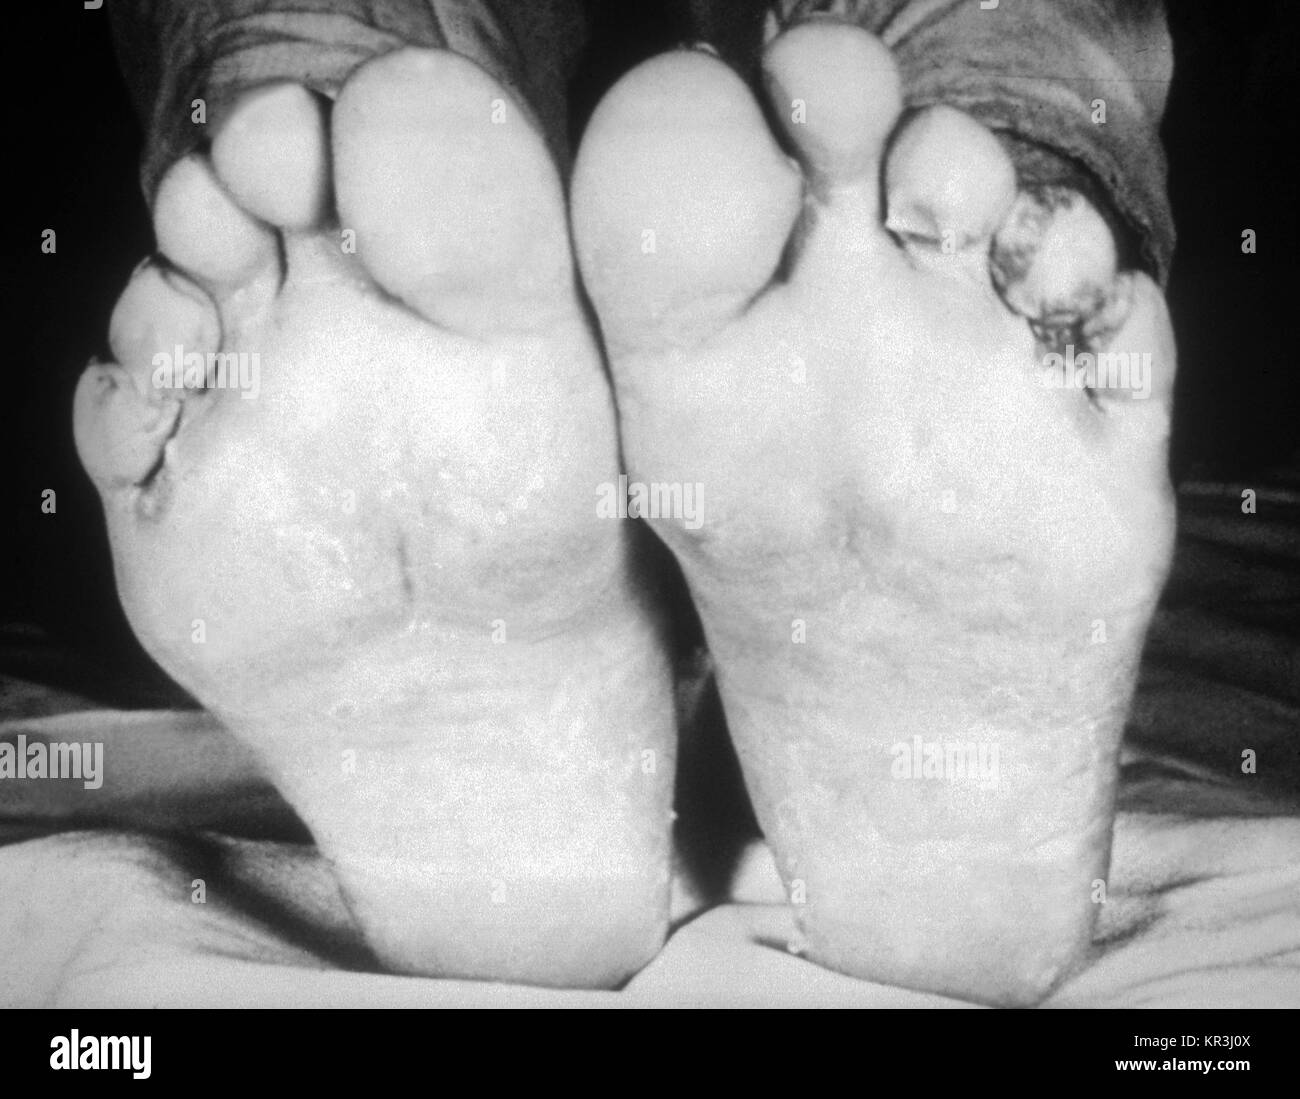 Ein Foto von syphilitische Papeln in der intertriginous Bereiche der Zehen. Ein Patient mit feuchten Papeln in der intertriginous Bereiche zwischen den Zehen, 1971. Diese klinische Manifestation tritt während der zweiten Phase der Syphilis, und wird durch das Bakterium Treponema pallidum verursacht. Mit freundlicher CDC/Susan Lindsley. Stockfoto